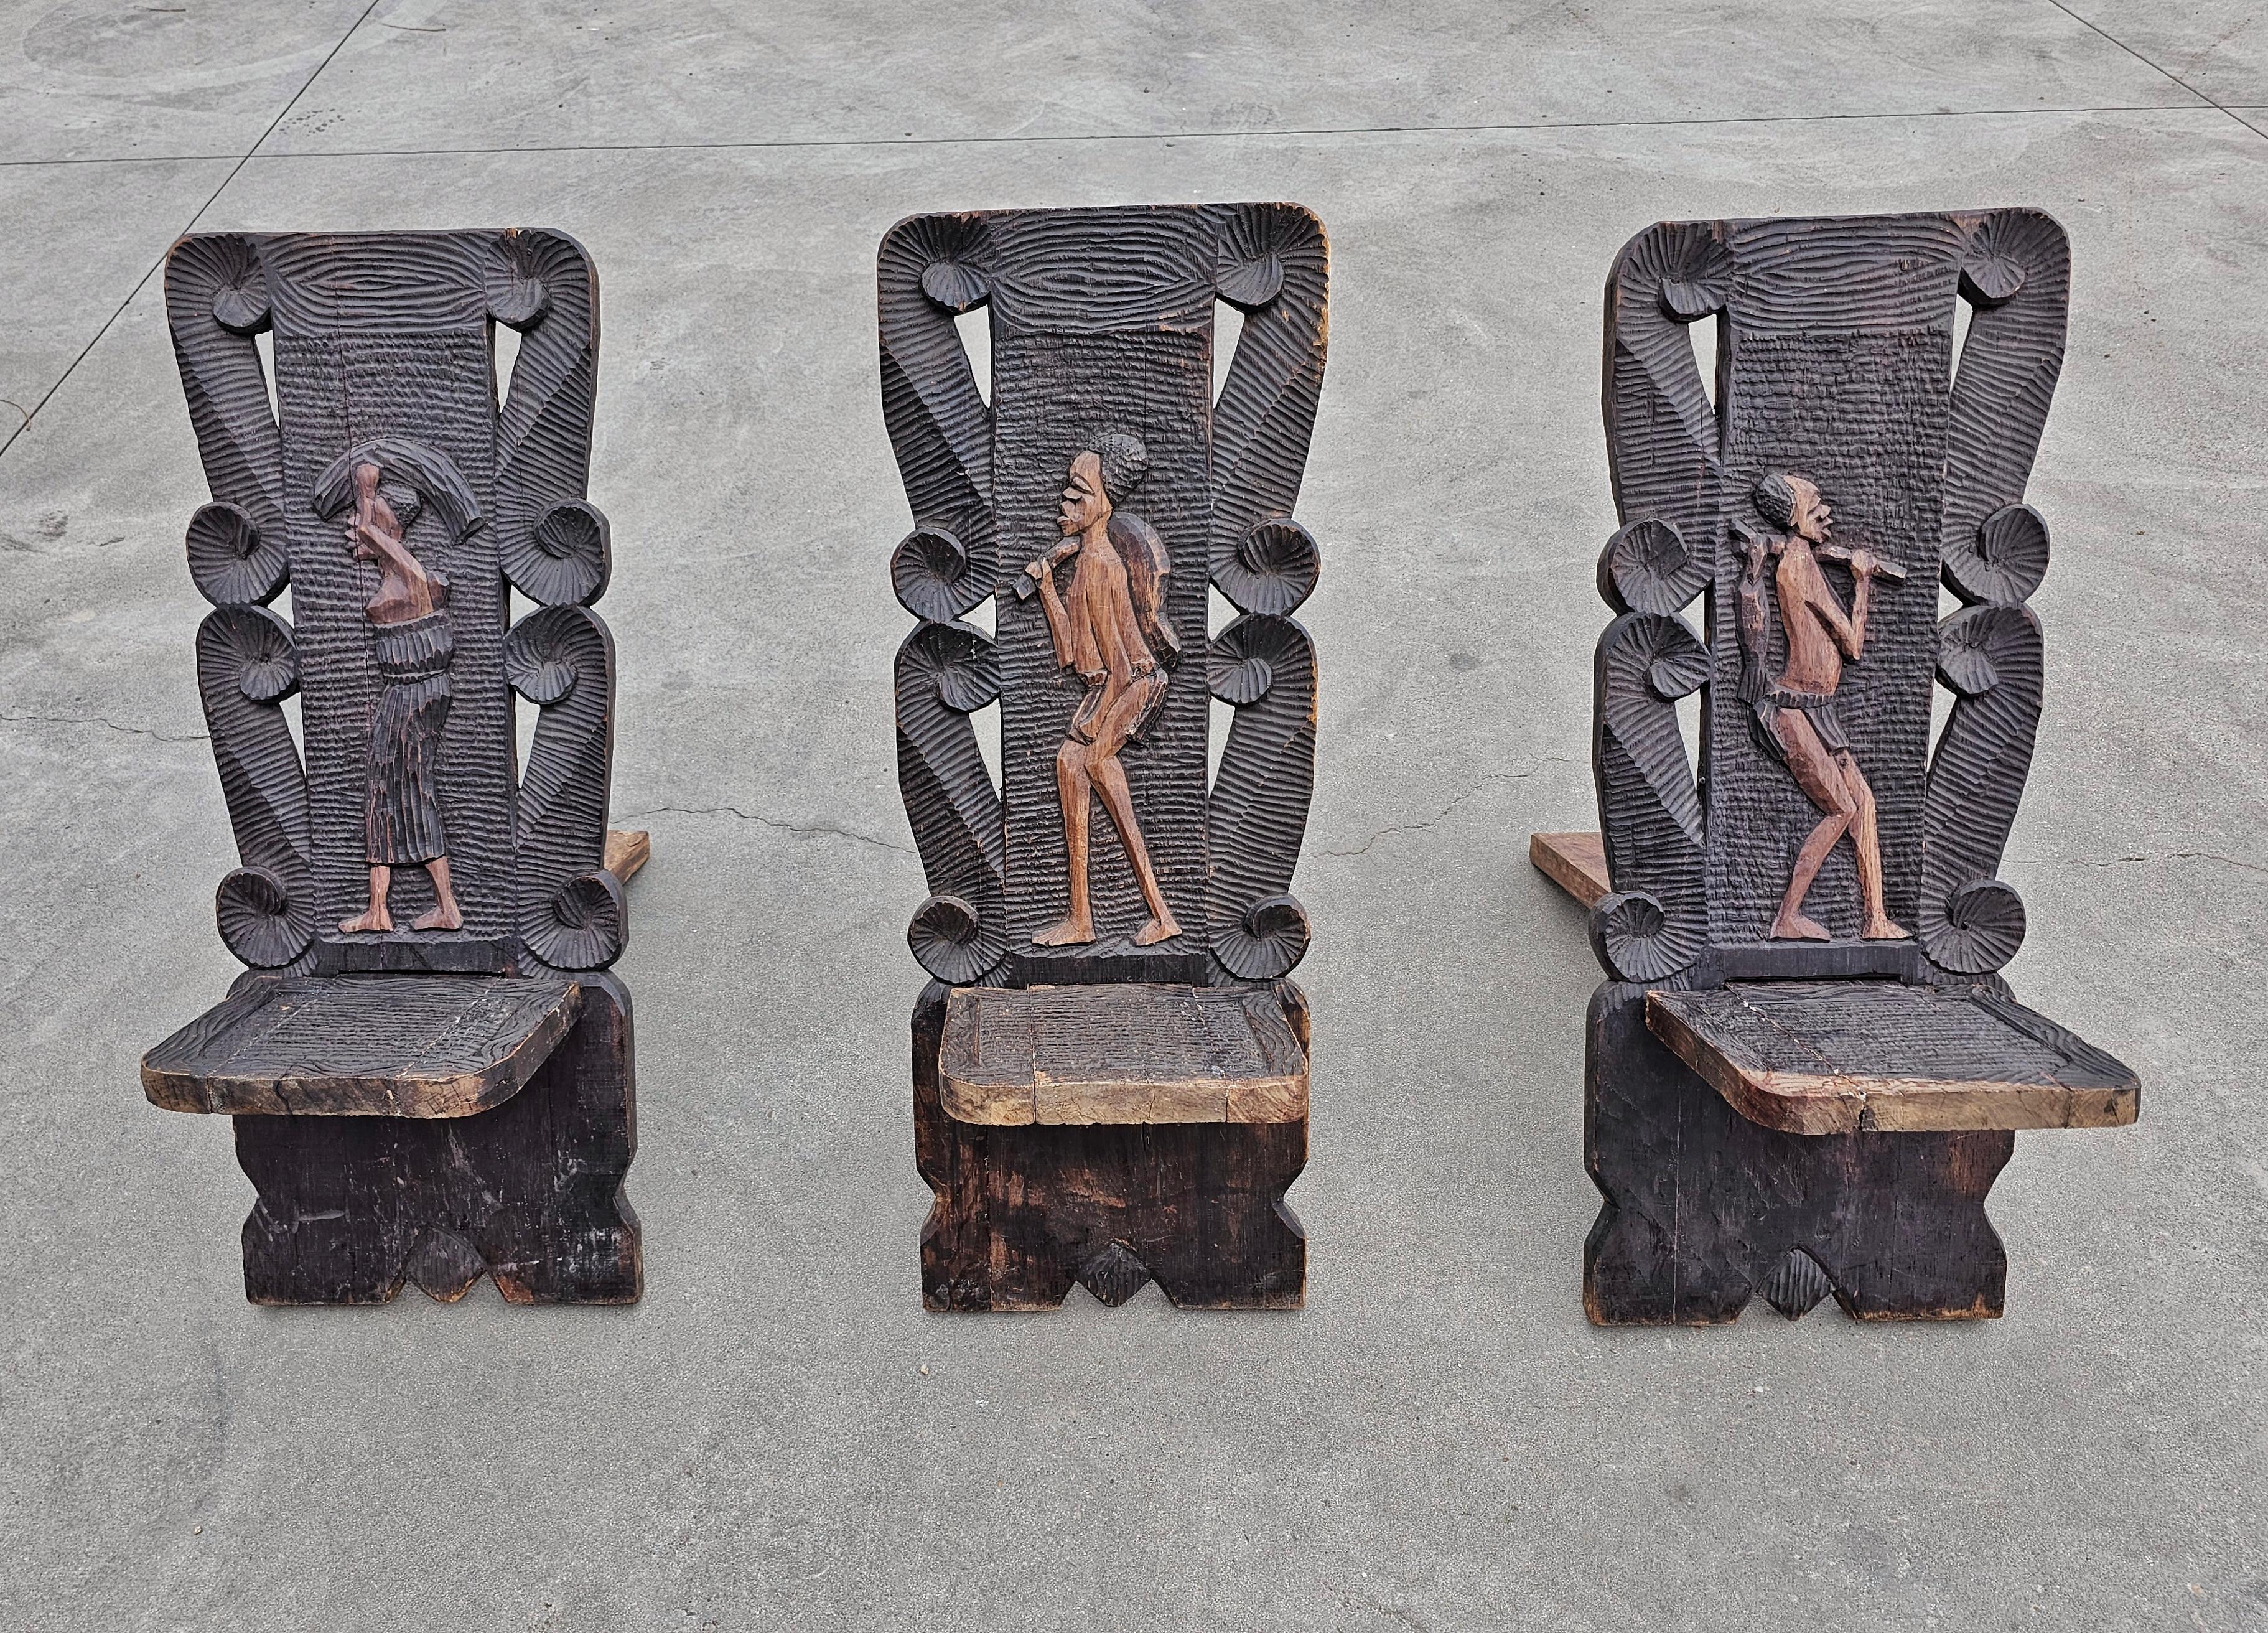 LE PRIX INDIQUÉ EST PAR PIÈCE. 

LORS DE L'ACHAT, VEUILLEZ PRÉCISER LA CHAISE QUI VOUS INTÉRESSE.

Vous trouverez dans cette liste 3 magnifiques et très sculpturales chaises Stargazer d'Afrique de l'Ouest en bois sculpté à la main. Les chaises sont